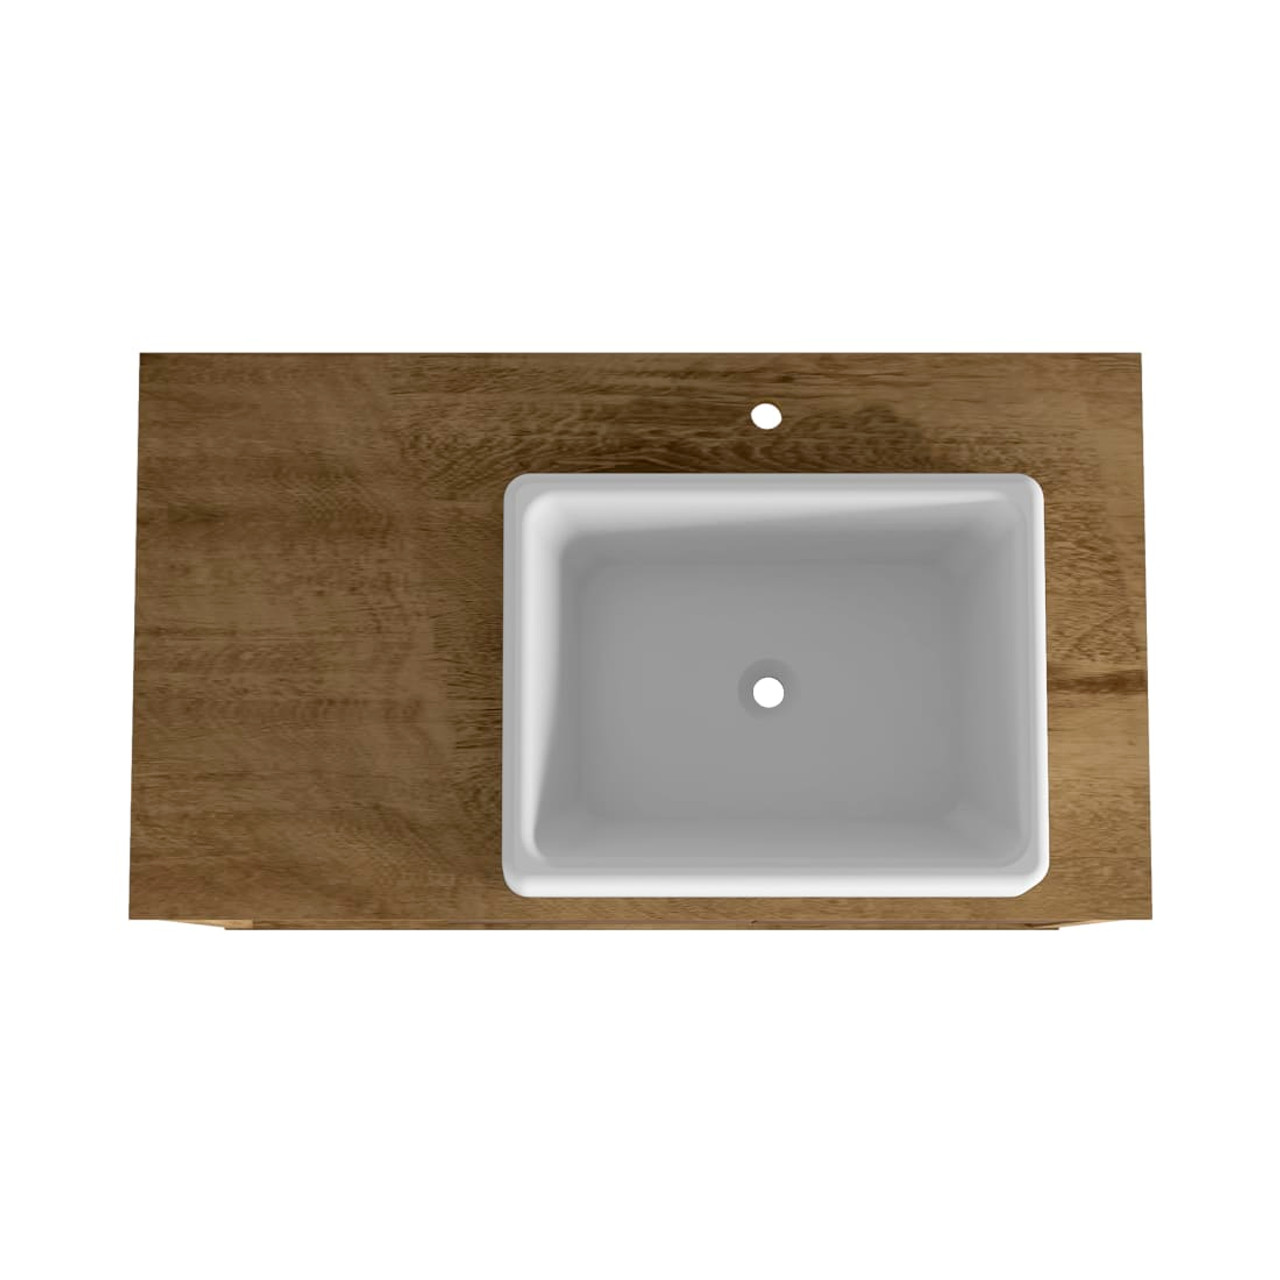 Liberty Floating 31.49” Bathroom Vanity Sink in Rustic Brown and White